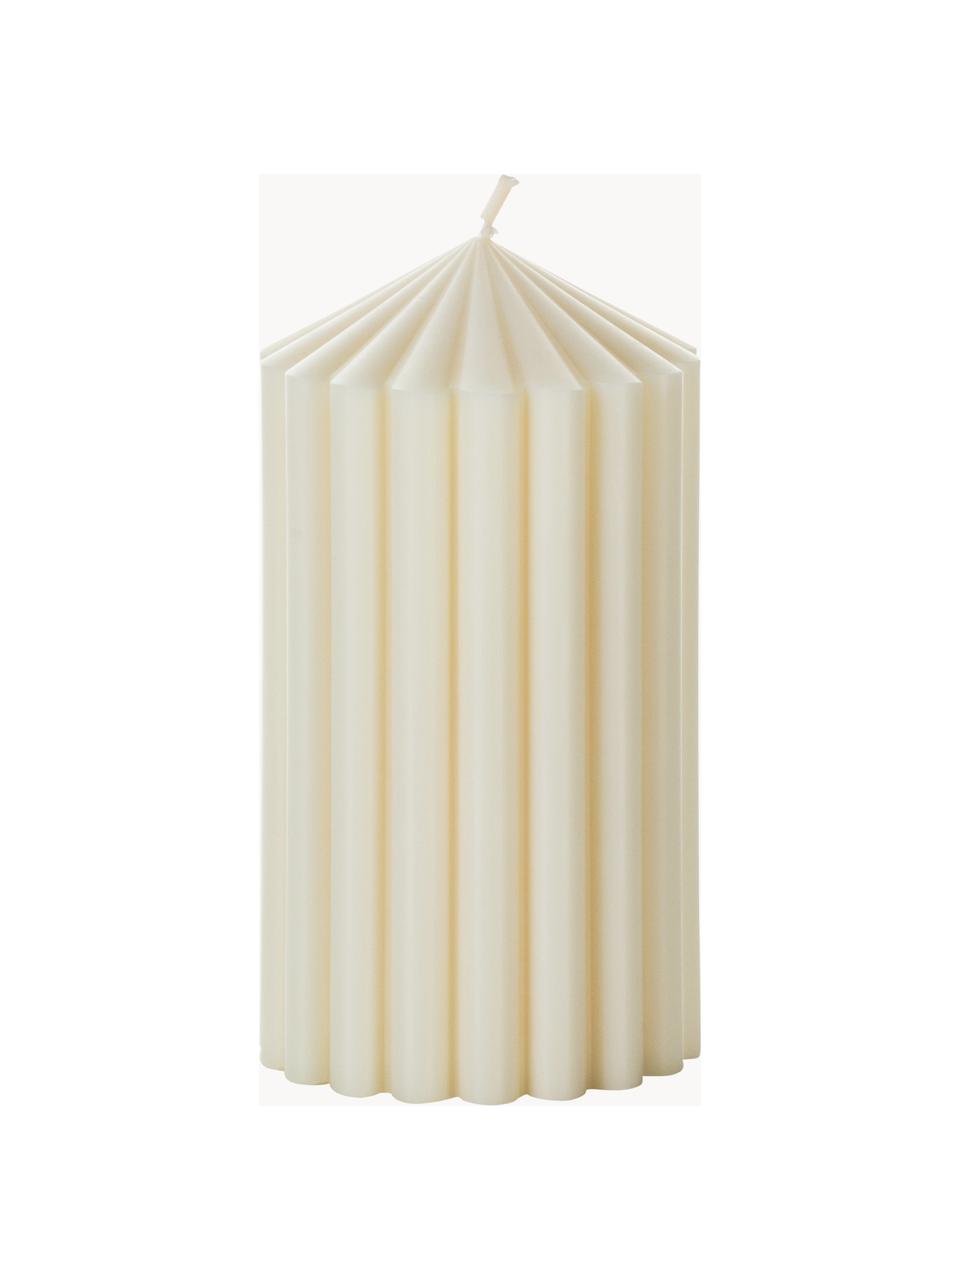 Svíčka Siena, Vosk, Tlumeně bílá, Ø 7 cm, V 13 cm